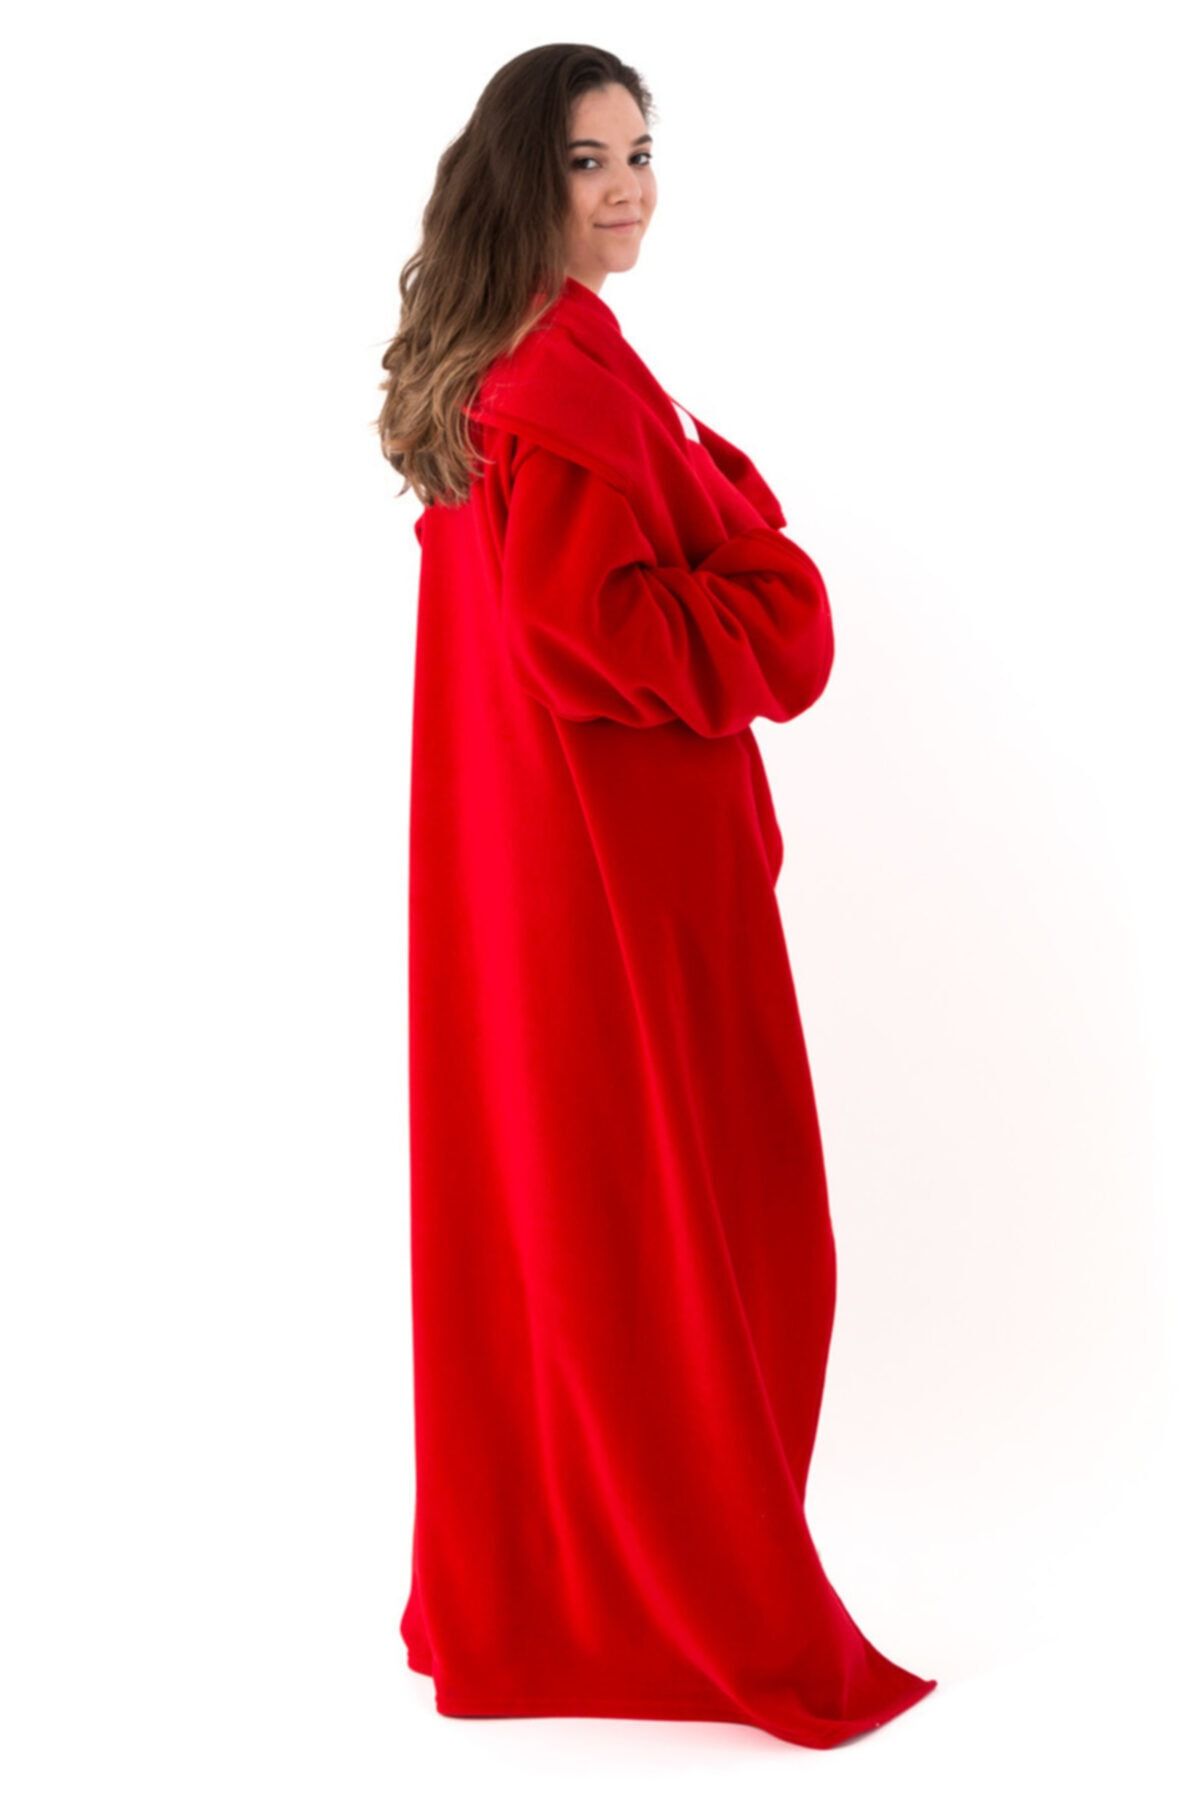 Hediyesepeti Giyilebilir Battaniye - Giyilebilen Kollu Polar Battaniye - Tek Kişilik Kışlık TV Battaniyesi